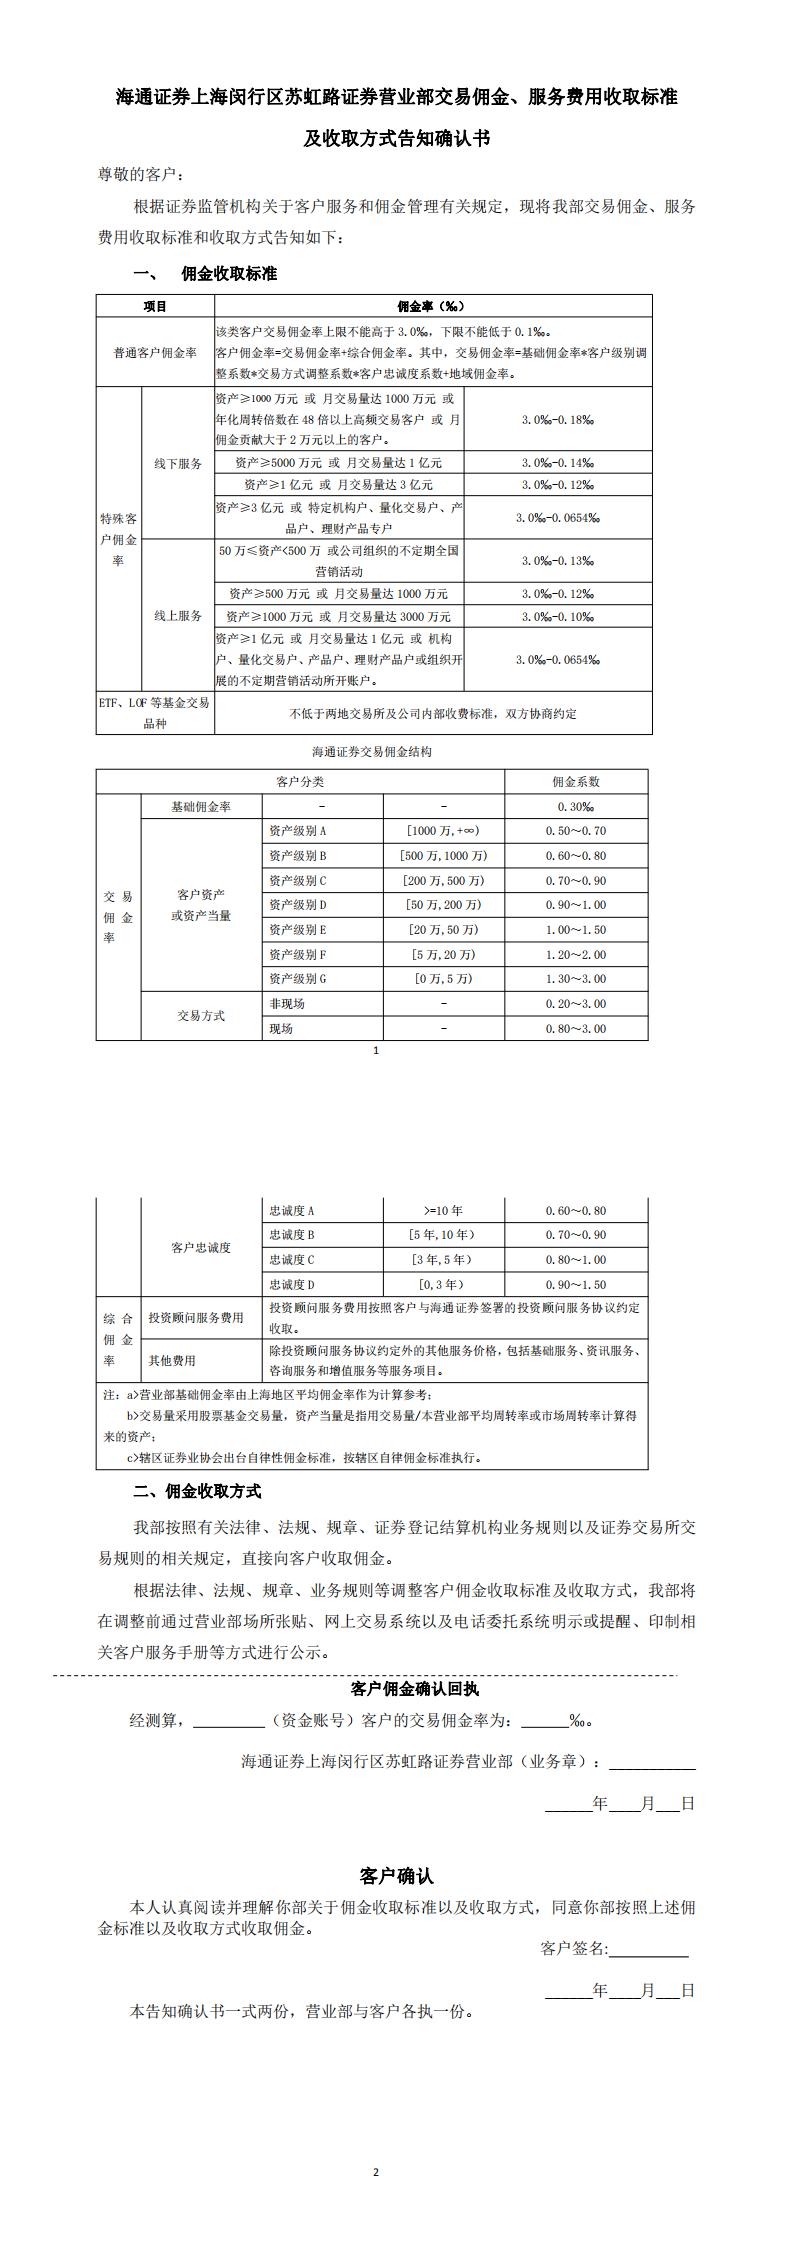 附件2：上海闵行区苏虹路营业部交易佣金收取标准告知确认书_00.jpg